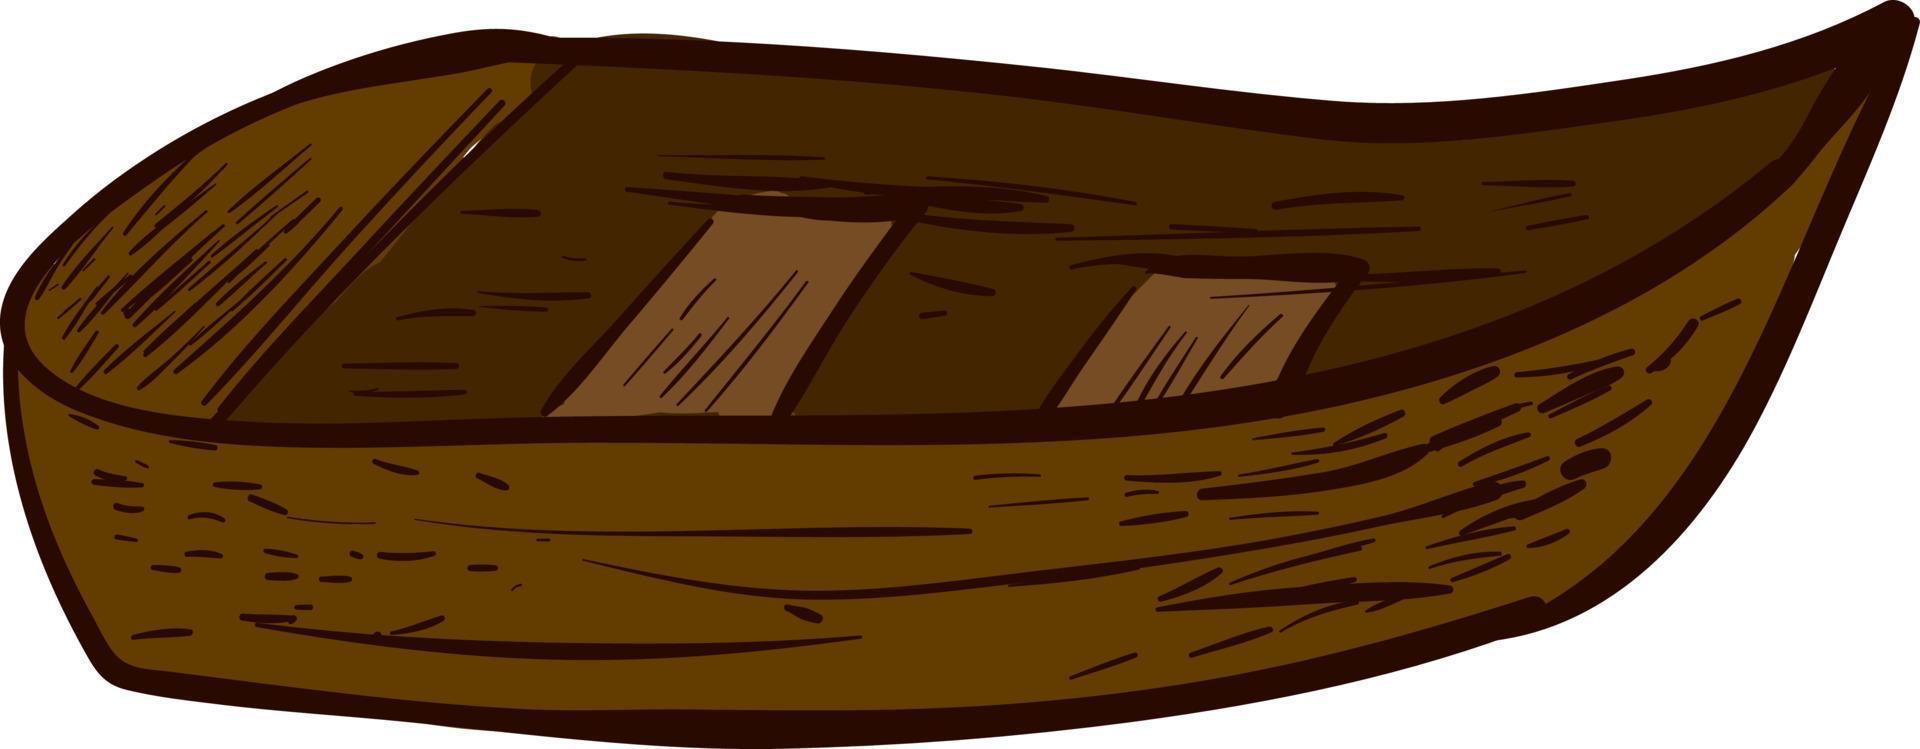 Holzboot, Illustration, Vektor auf weißem Hintergrund.